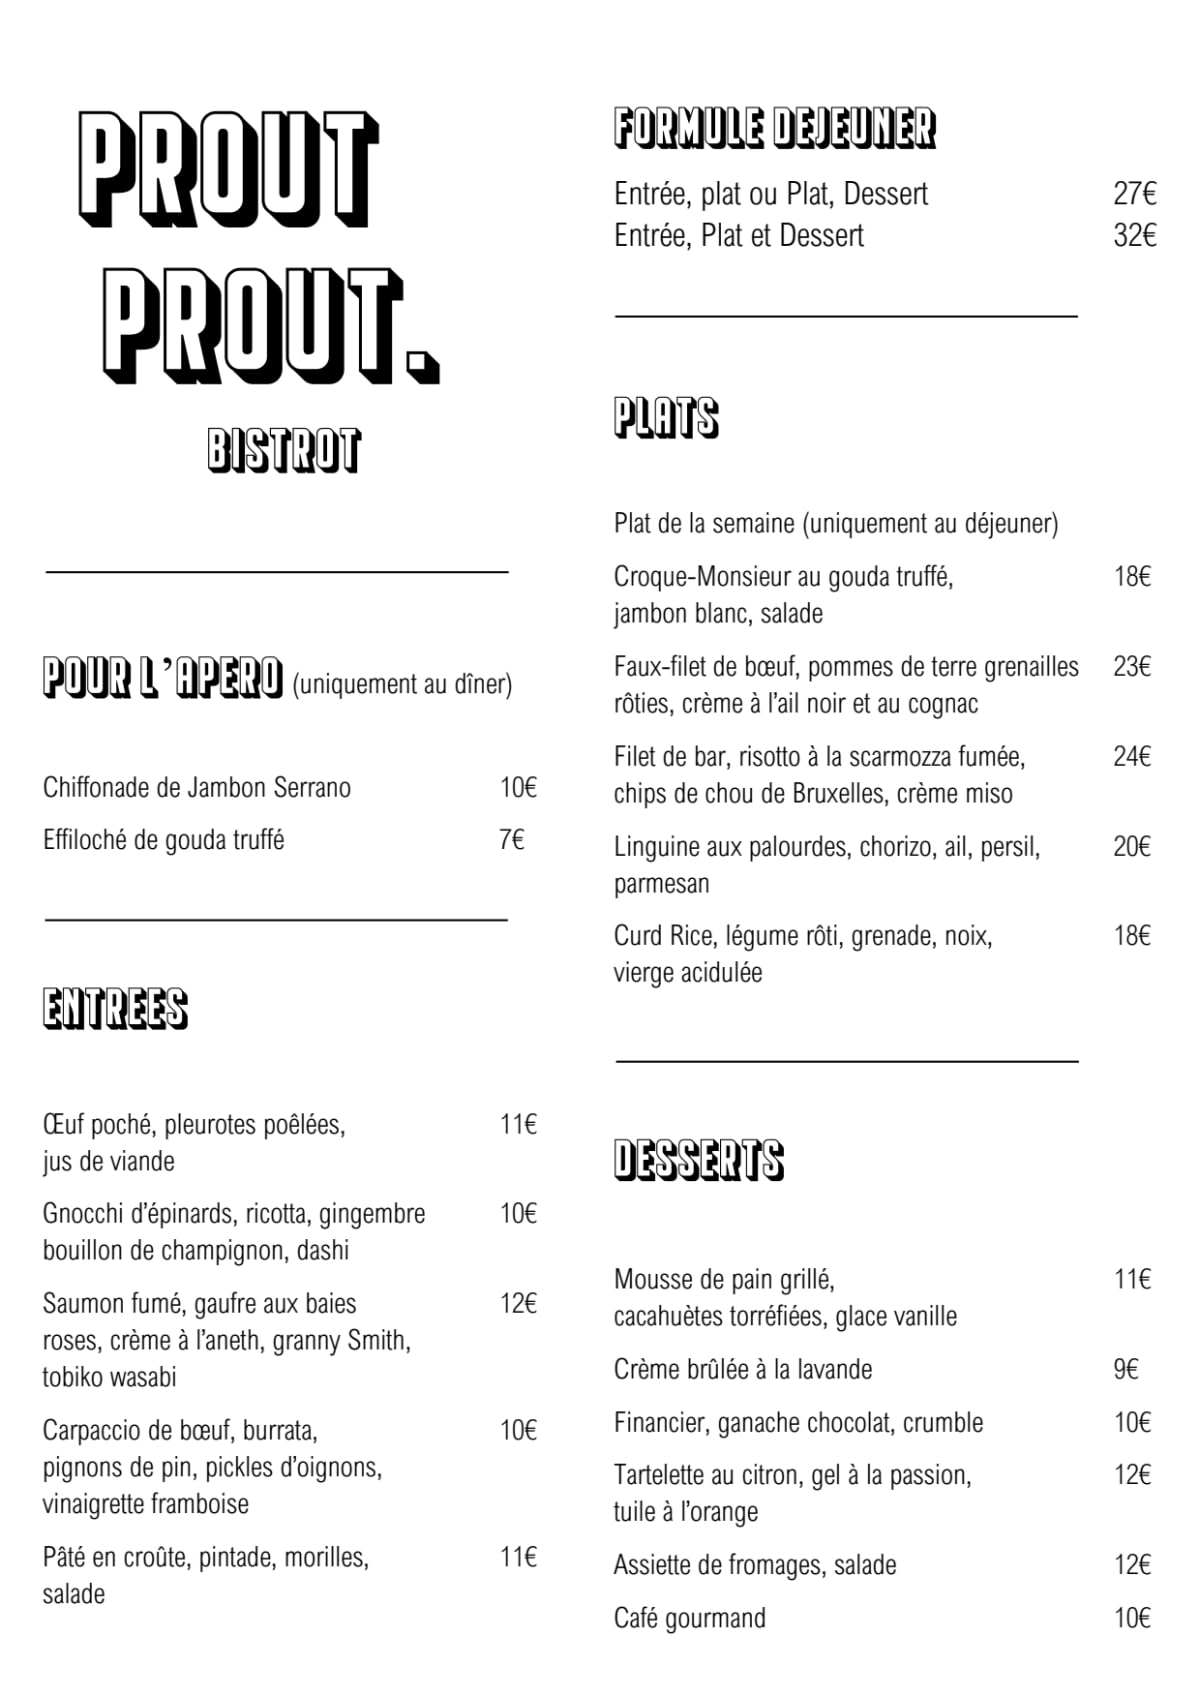 Prout Prout menu